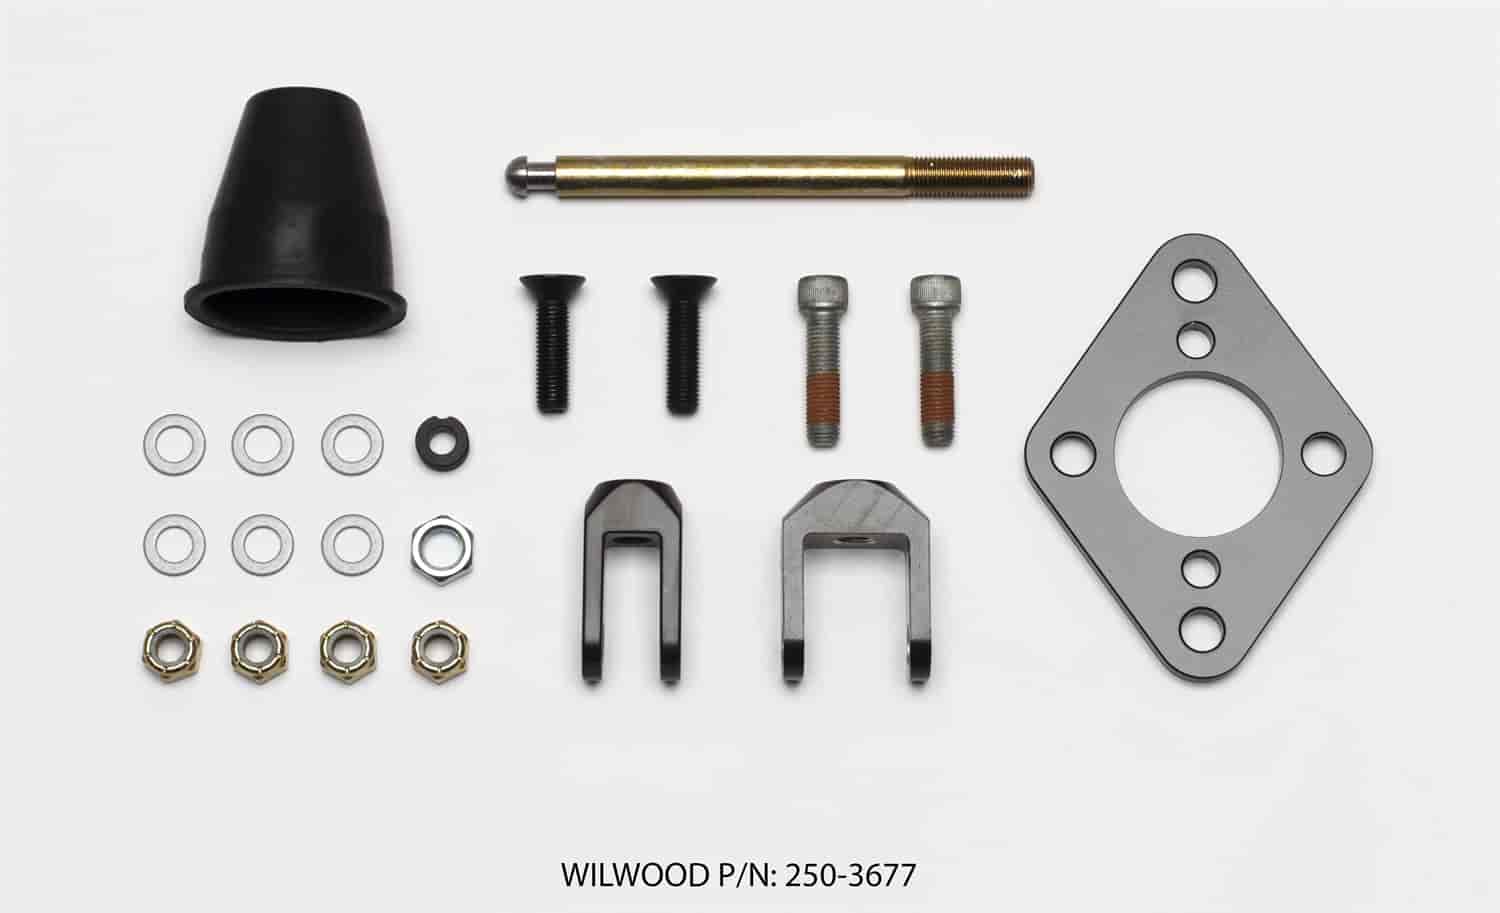 Reinforcement Bracket Kit Fits Wilwood Pedal Base, Clutch & Tandem Master Cylinders